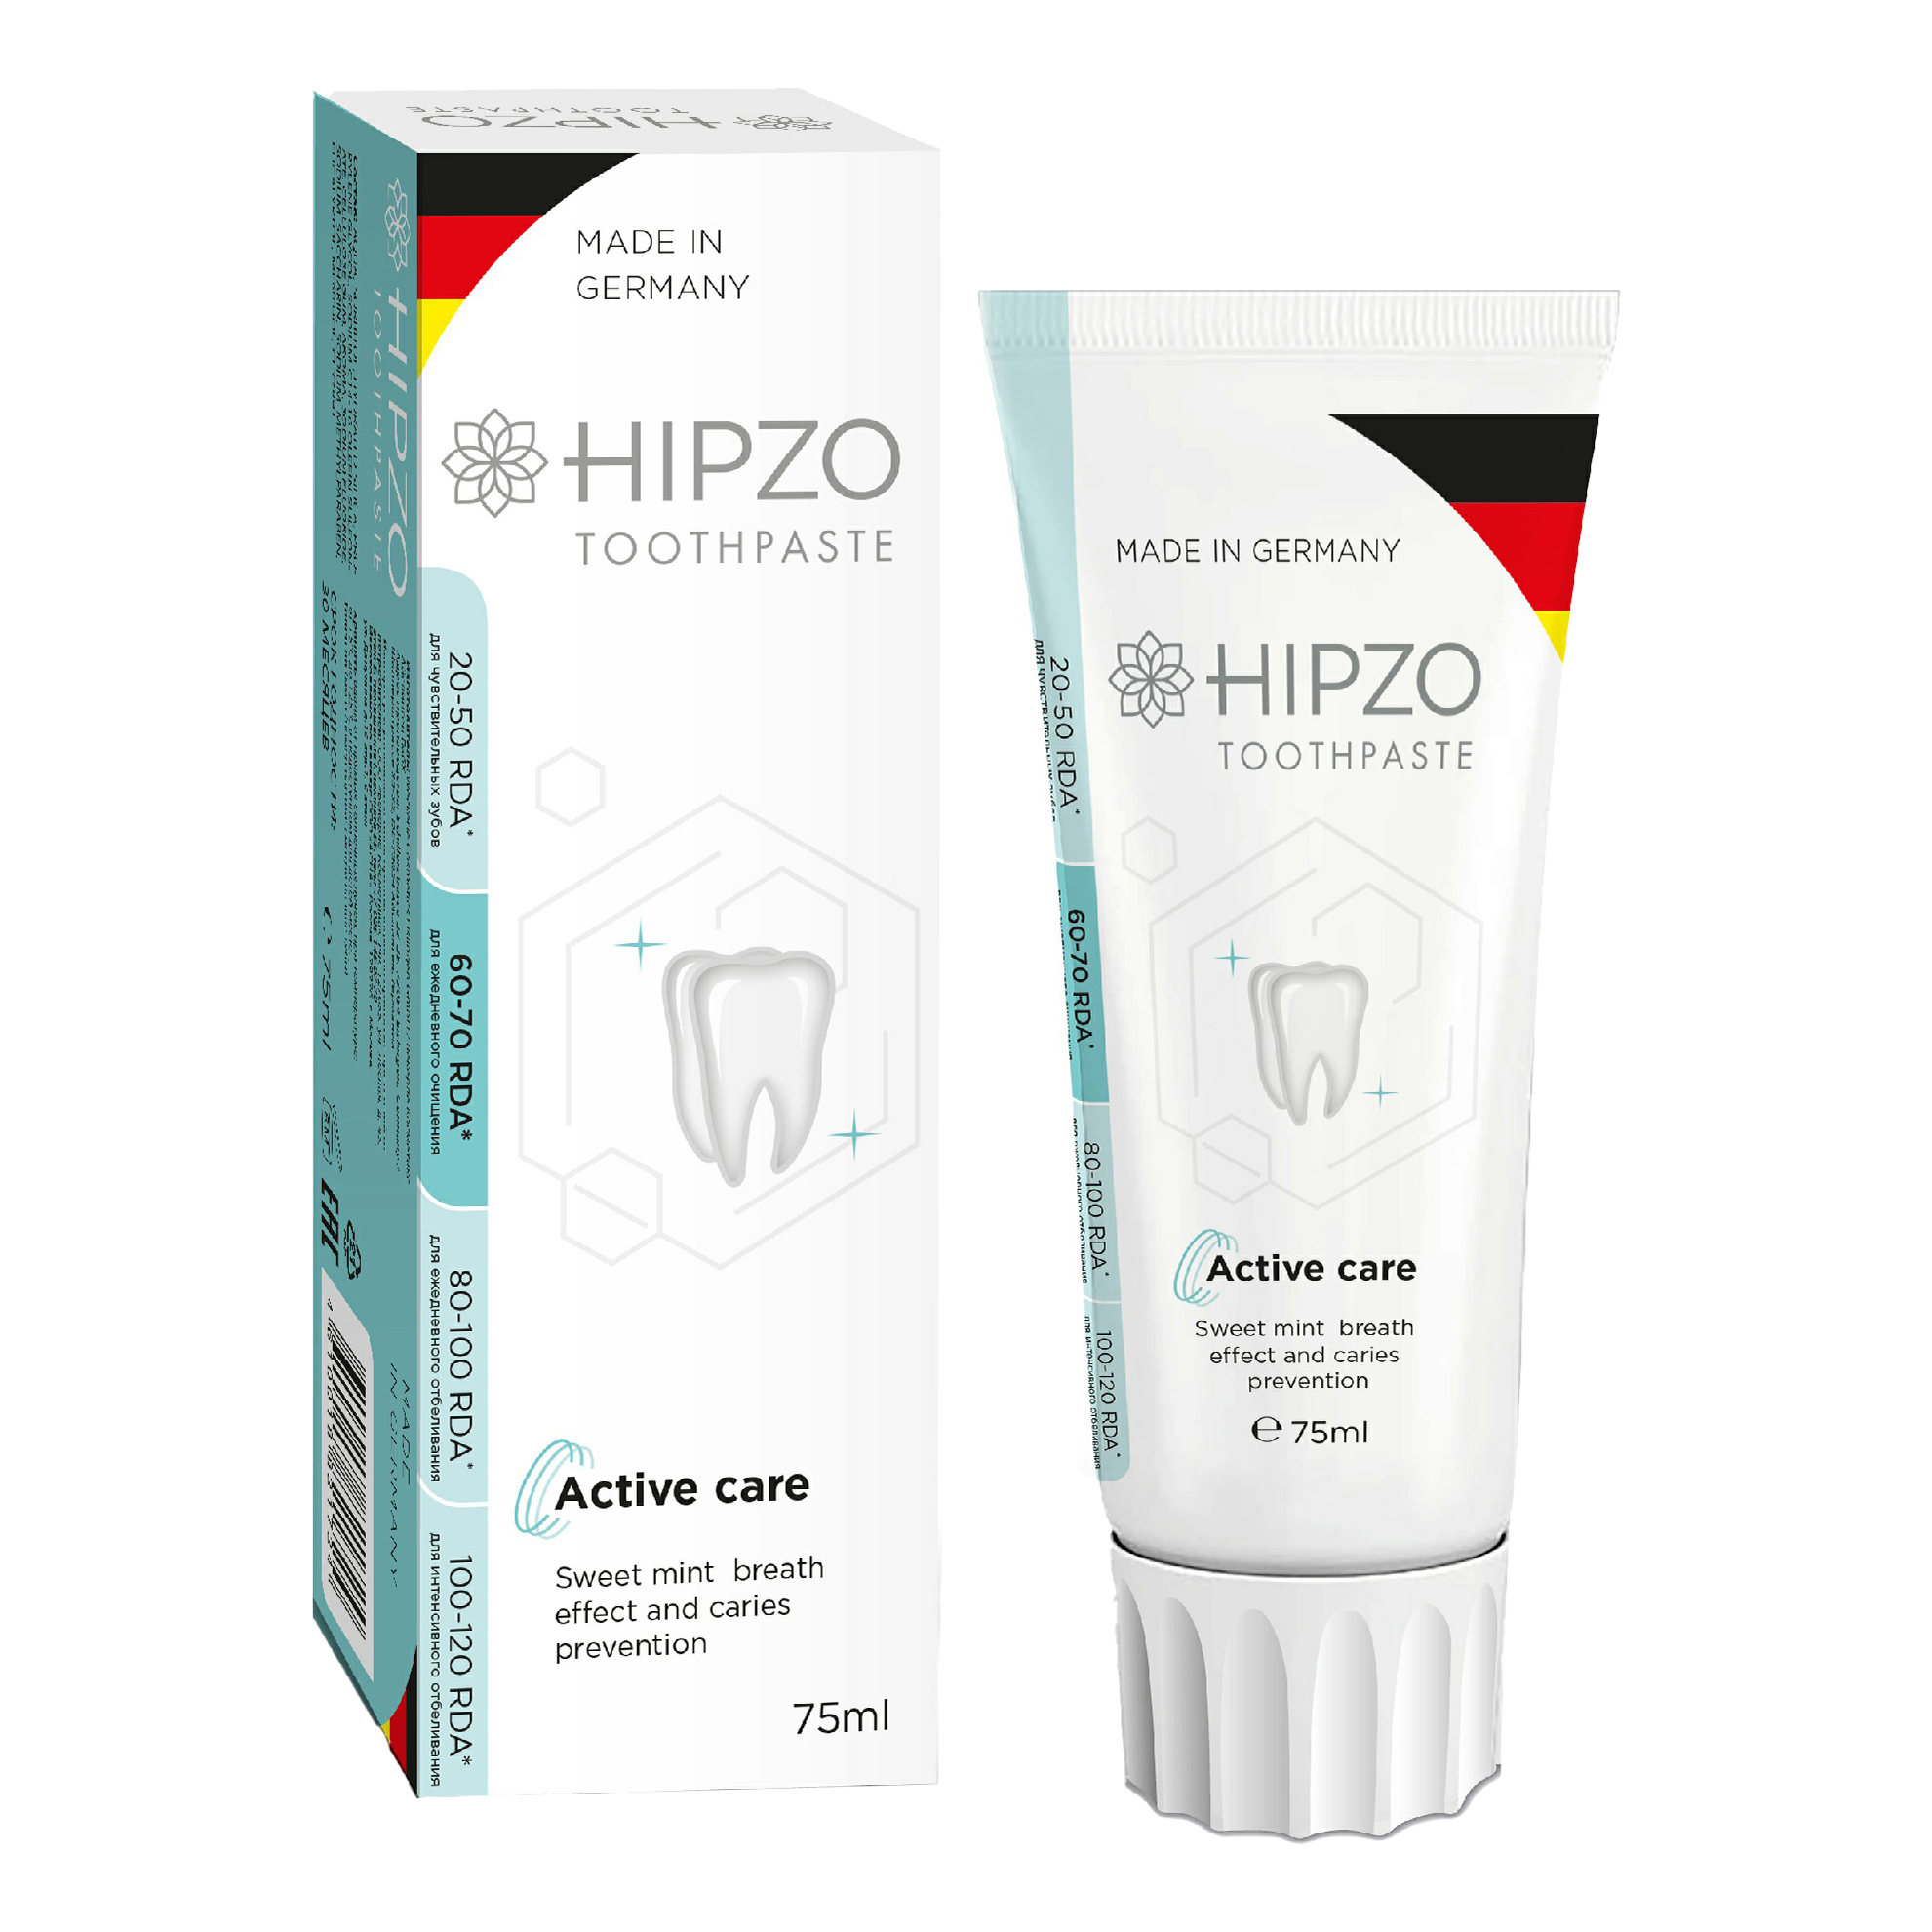 Зубная паста Hipzo Active care сладкая мята для свежести дыхания и защиты от кариеса 75 мл элмекс з паста защита от кариеса 75мл